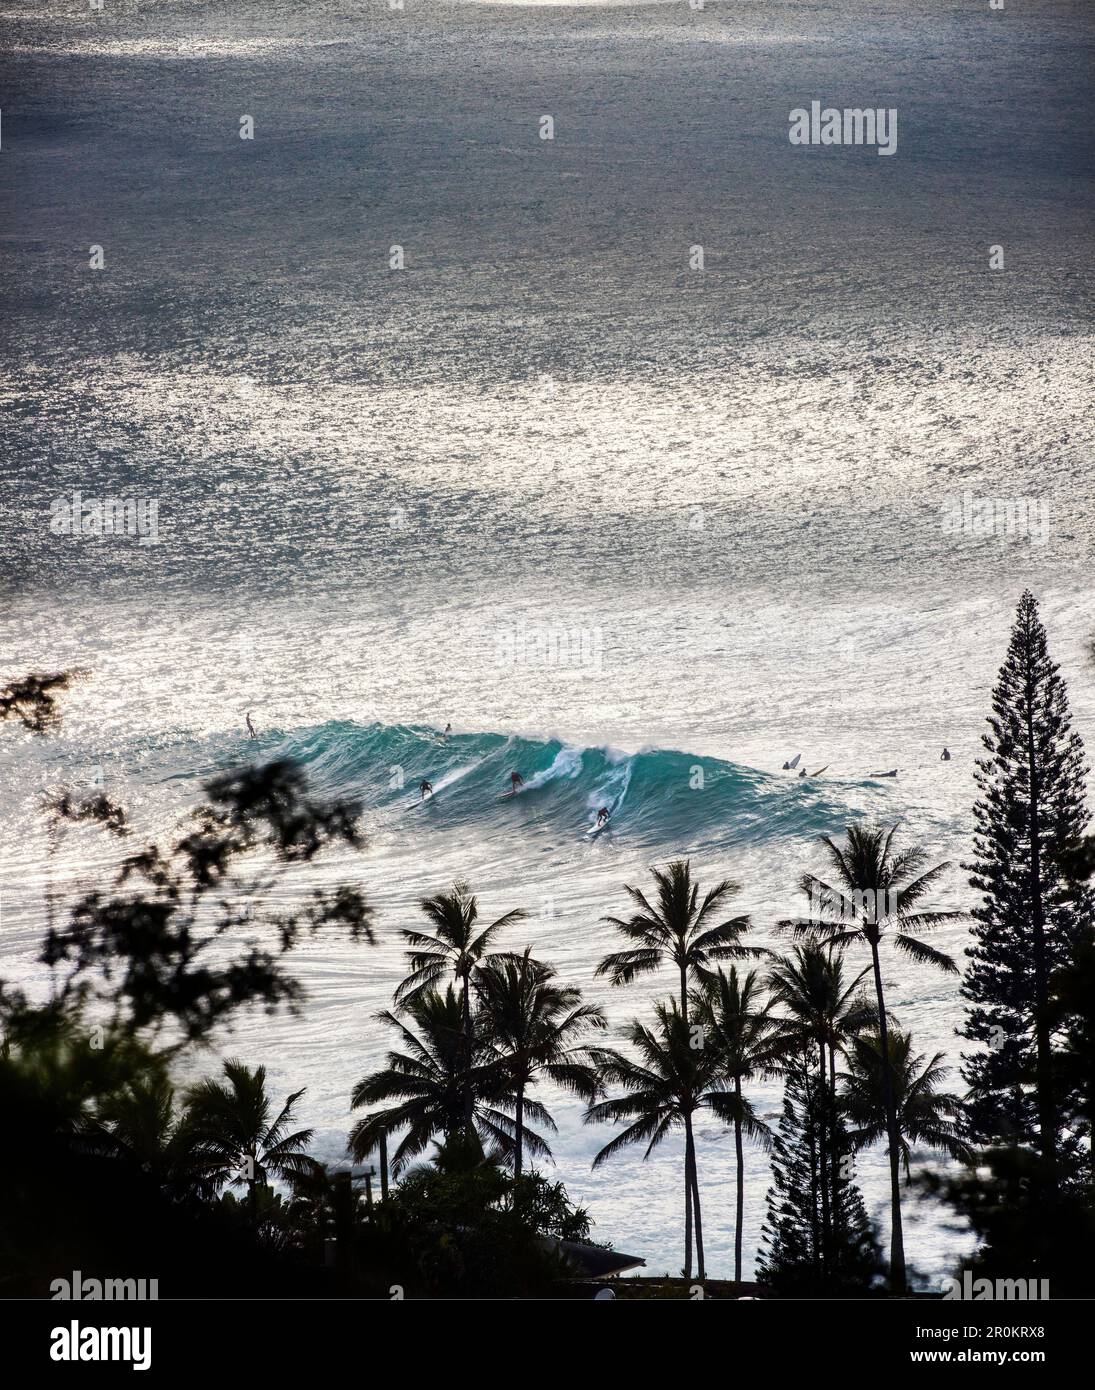 HAWAII, Oahu, Côte-Nord, les surfers dans l'eau à Waimea Bay Banque D'Images